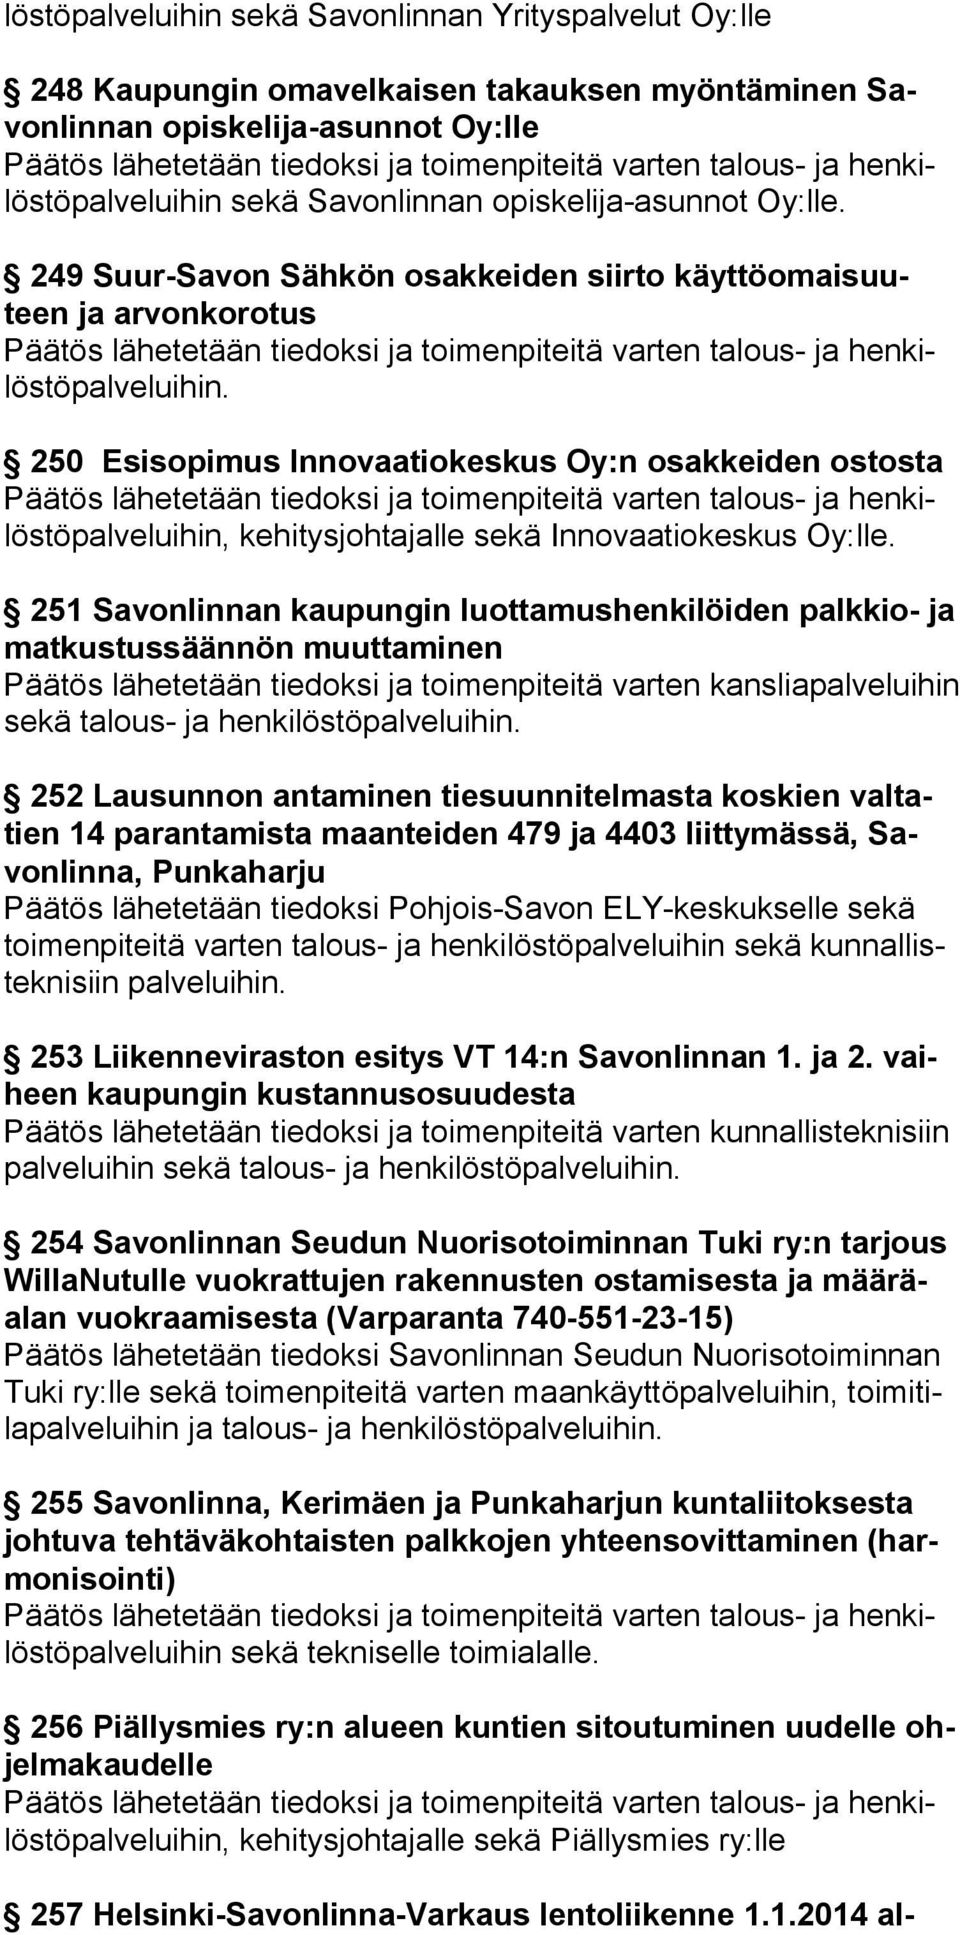 251 Savonlinnan kaupungin luottamushenkilöiden palkkio- ja mat kus tus säännön muuttaminen Päätös lähetetään tiedoksi ja toimenpiteitä varten kansliapalveluihin sekä ta lous- ja hen ki